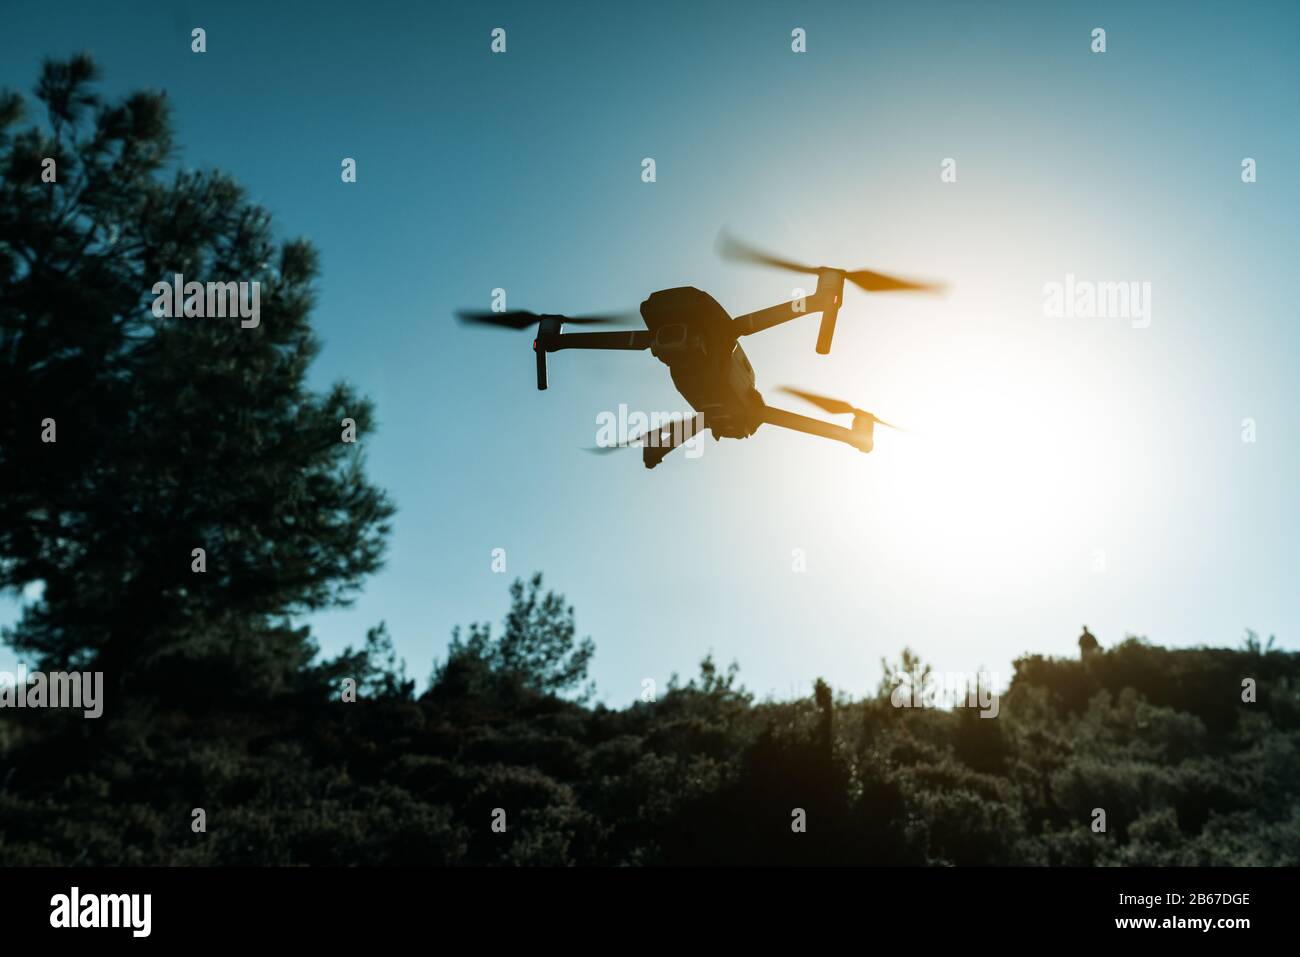 Silhouette d'un drone Quadrocopter avec la caméra contre le ciel bleu Banque D'Images